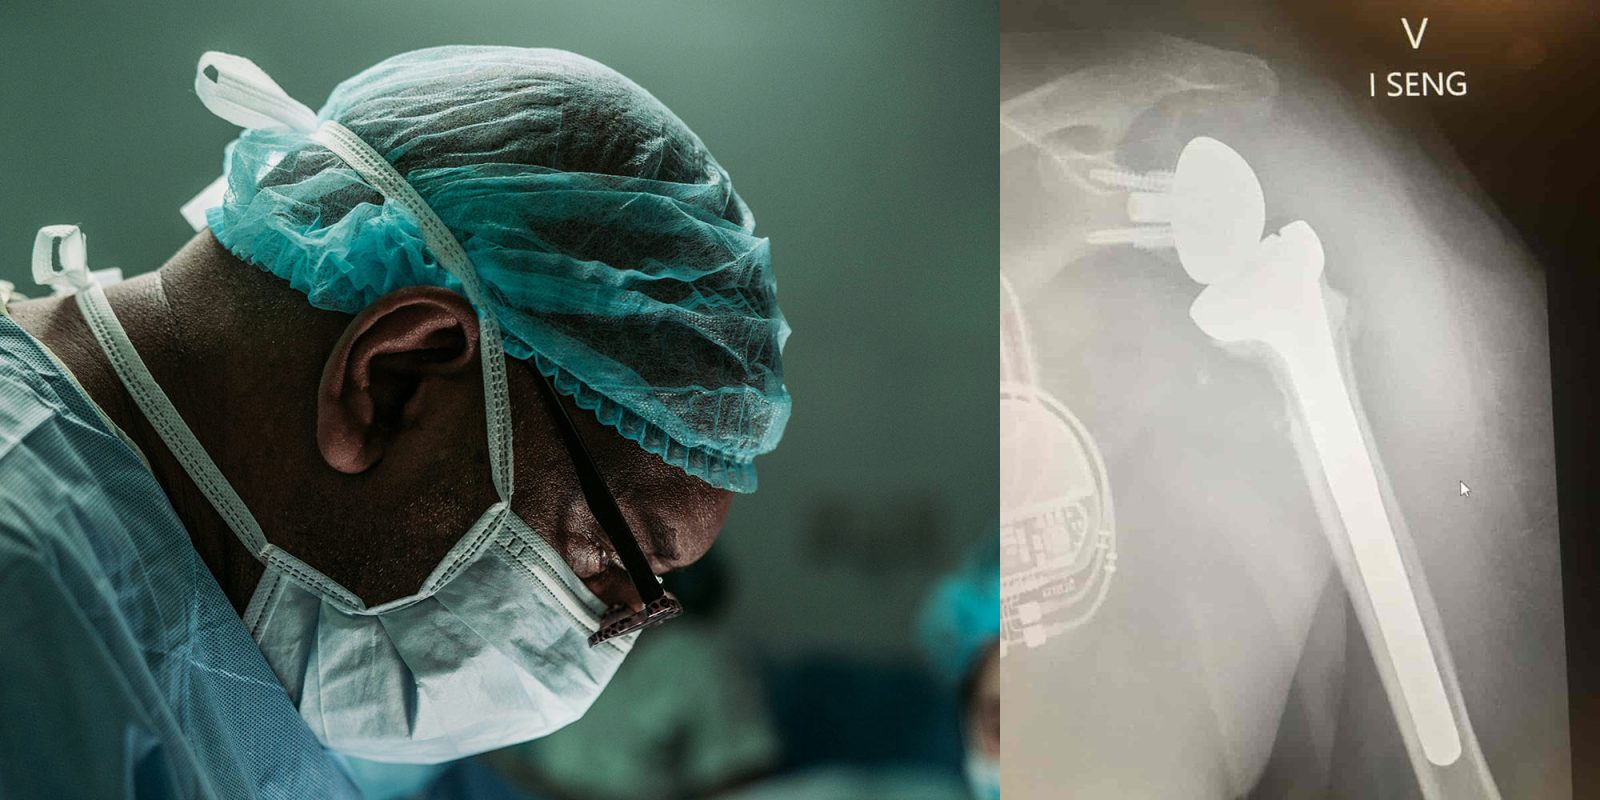 Vision Pro-ассистированная хирургия |  Хирург и рентген обратной замены плеча